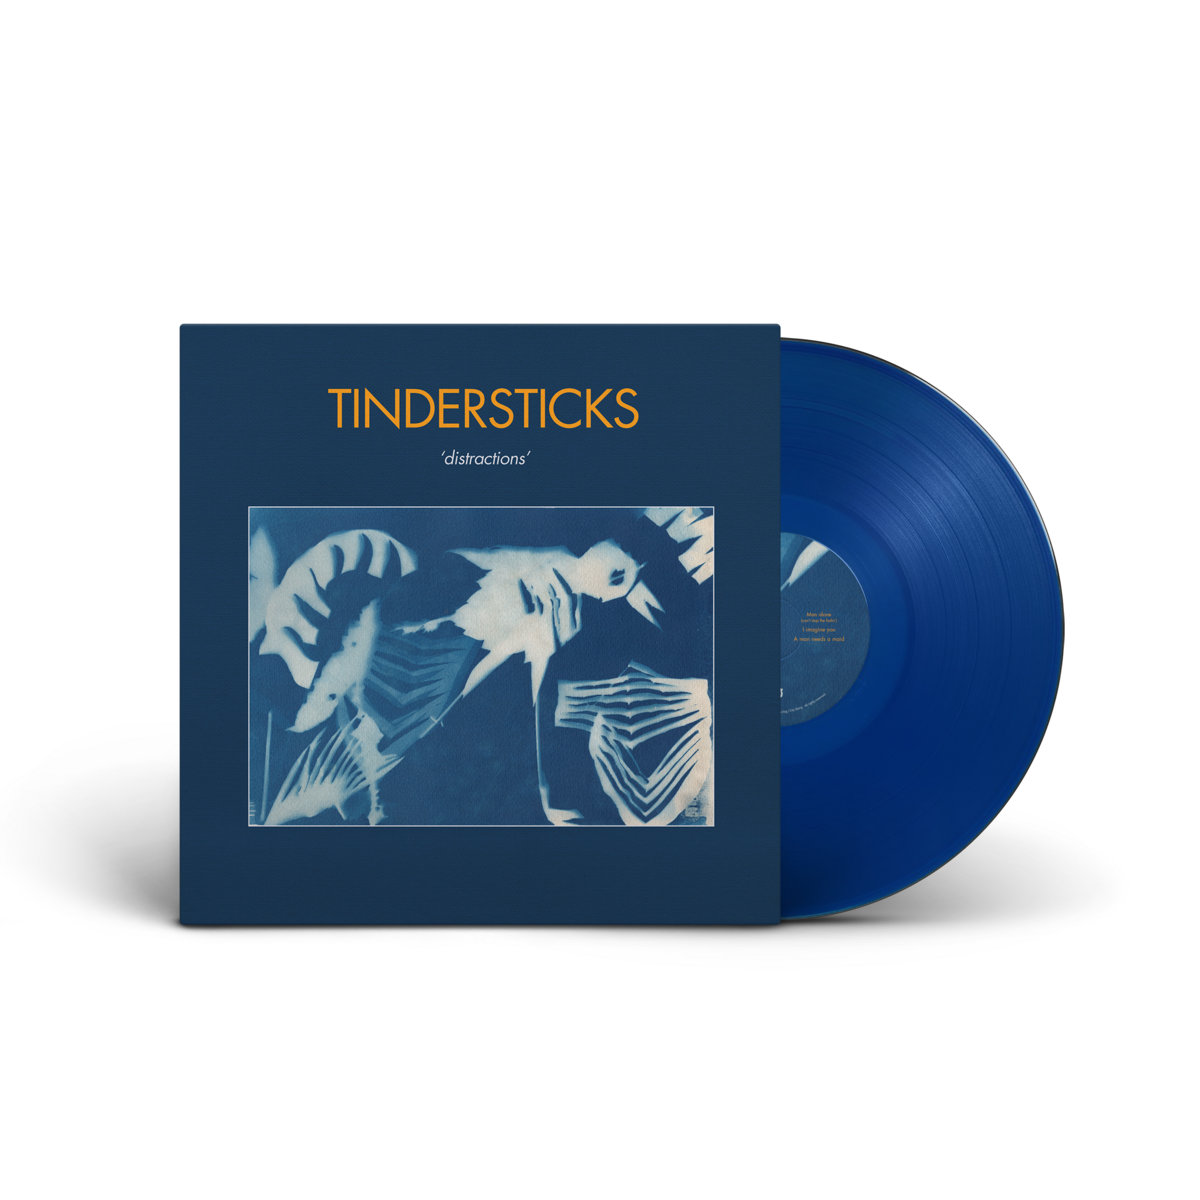 Tindersticks "Distractions" LP